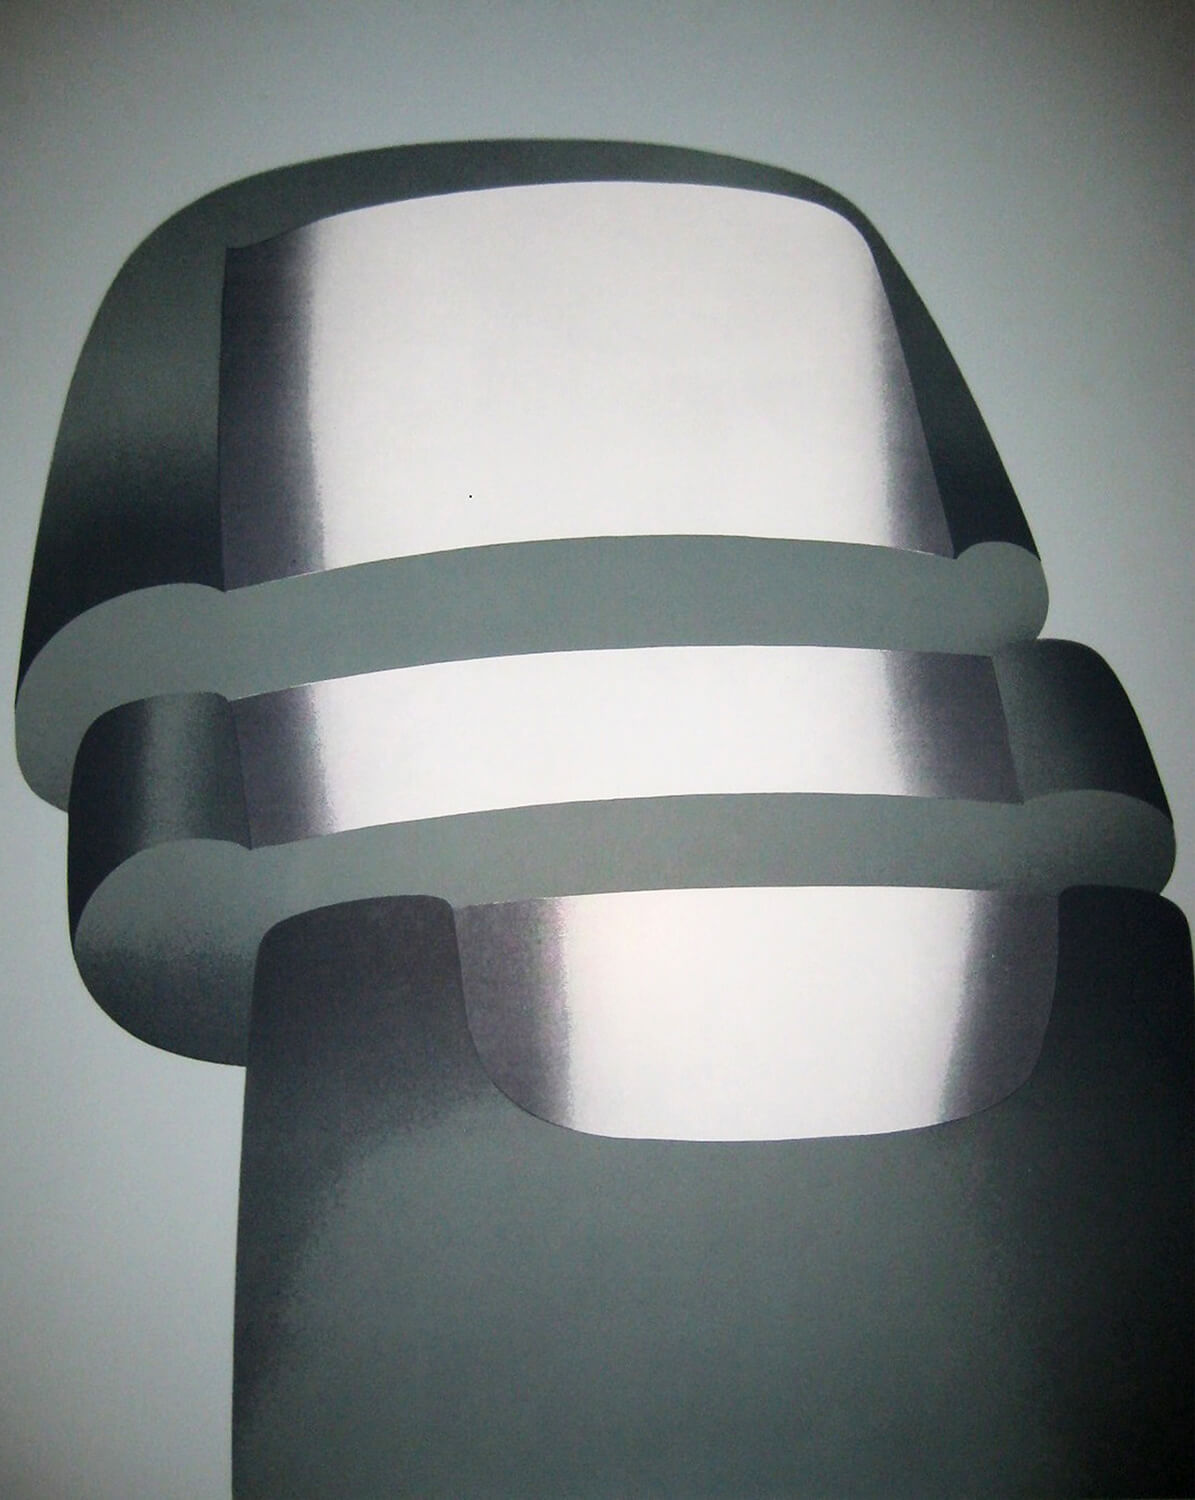 Lambert Maria Wintersberger, o. T. (Daumen mit Verletzung), 1968, Siebdruck, e. a., 60 x 50 cm